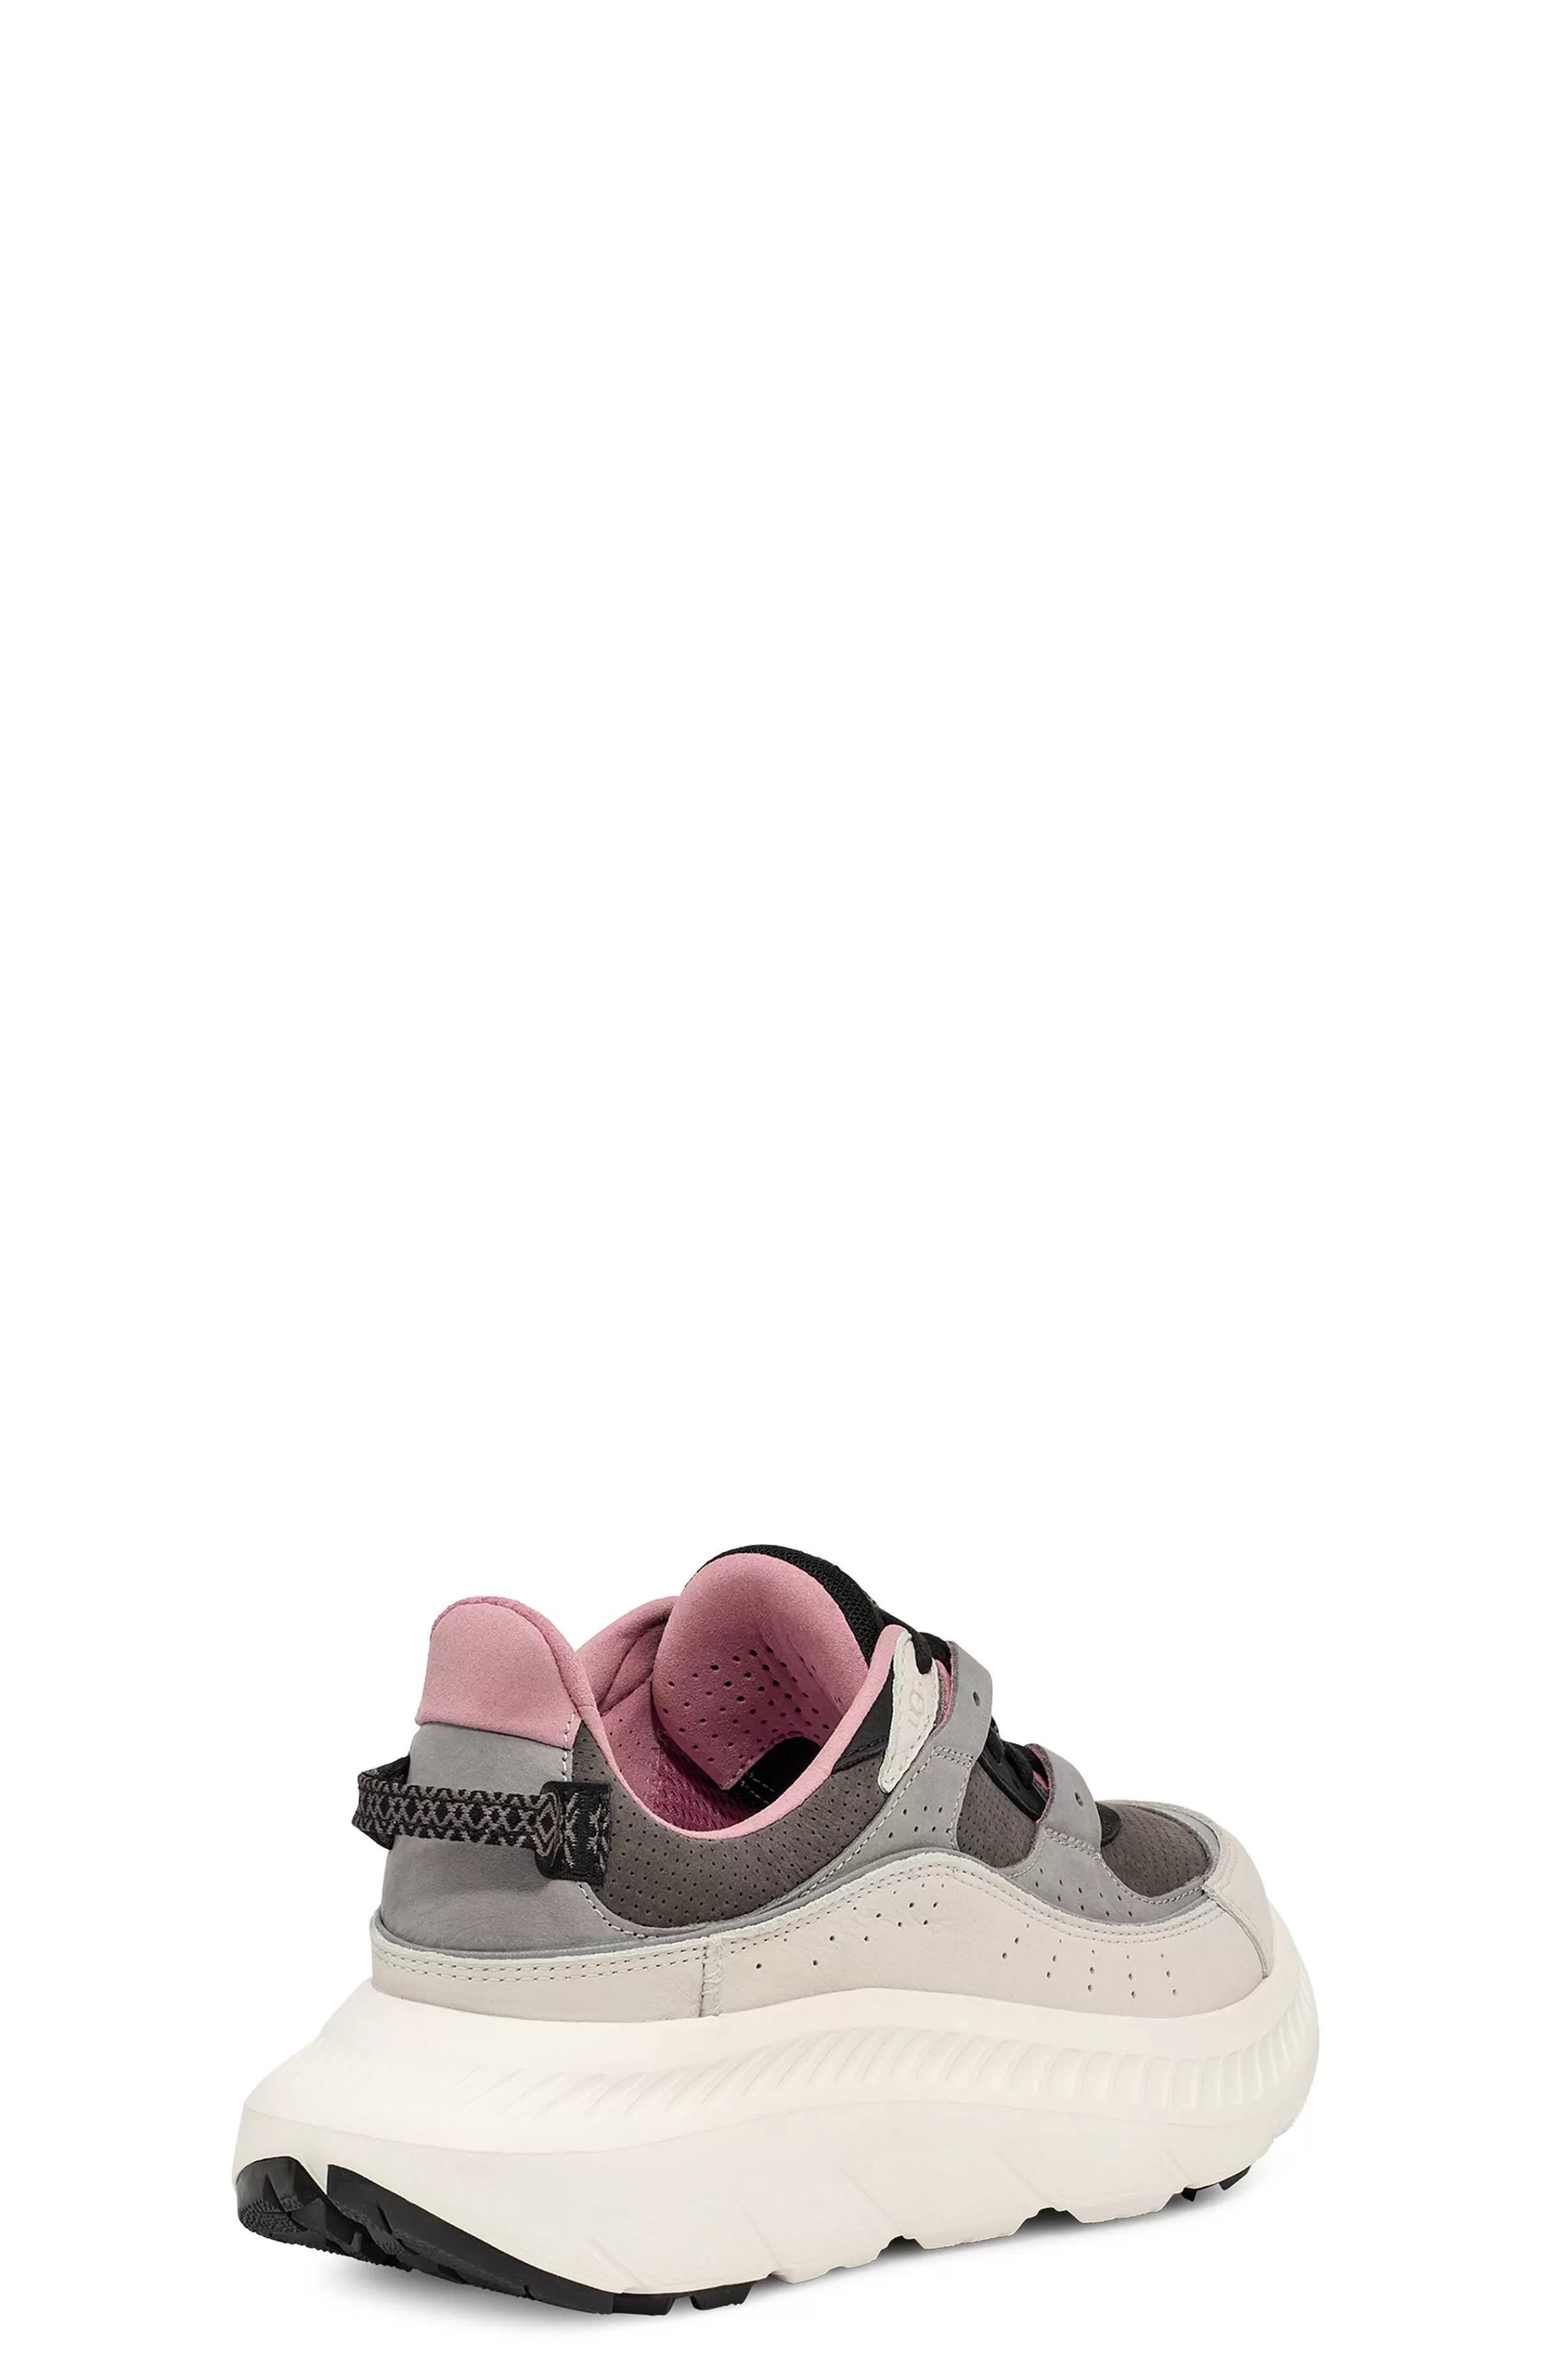 Sneakers-UGG Ca805 V2 Nubuck Blanc / Gris Asphalte / Bourgogne Clair